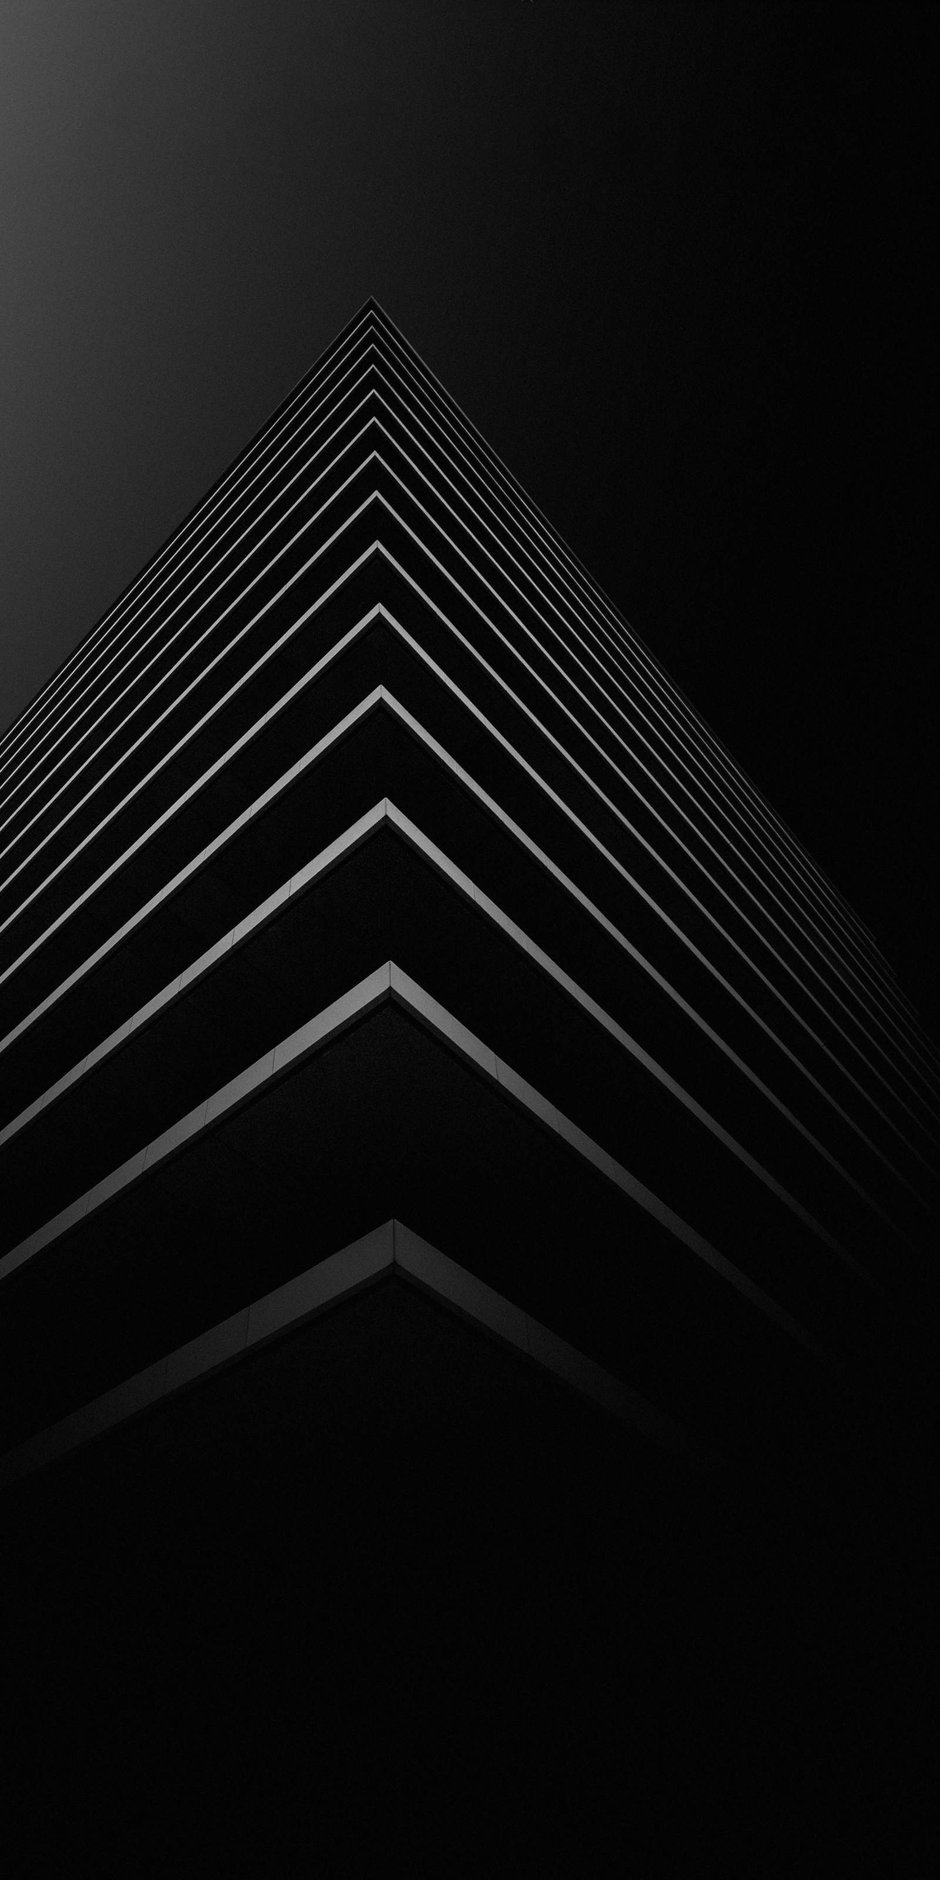 smartphone wallpaper hd,schwarz,schwarz und weiß,linie,monochrome fotografie,einfarbig